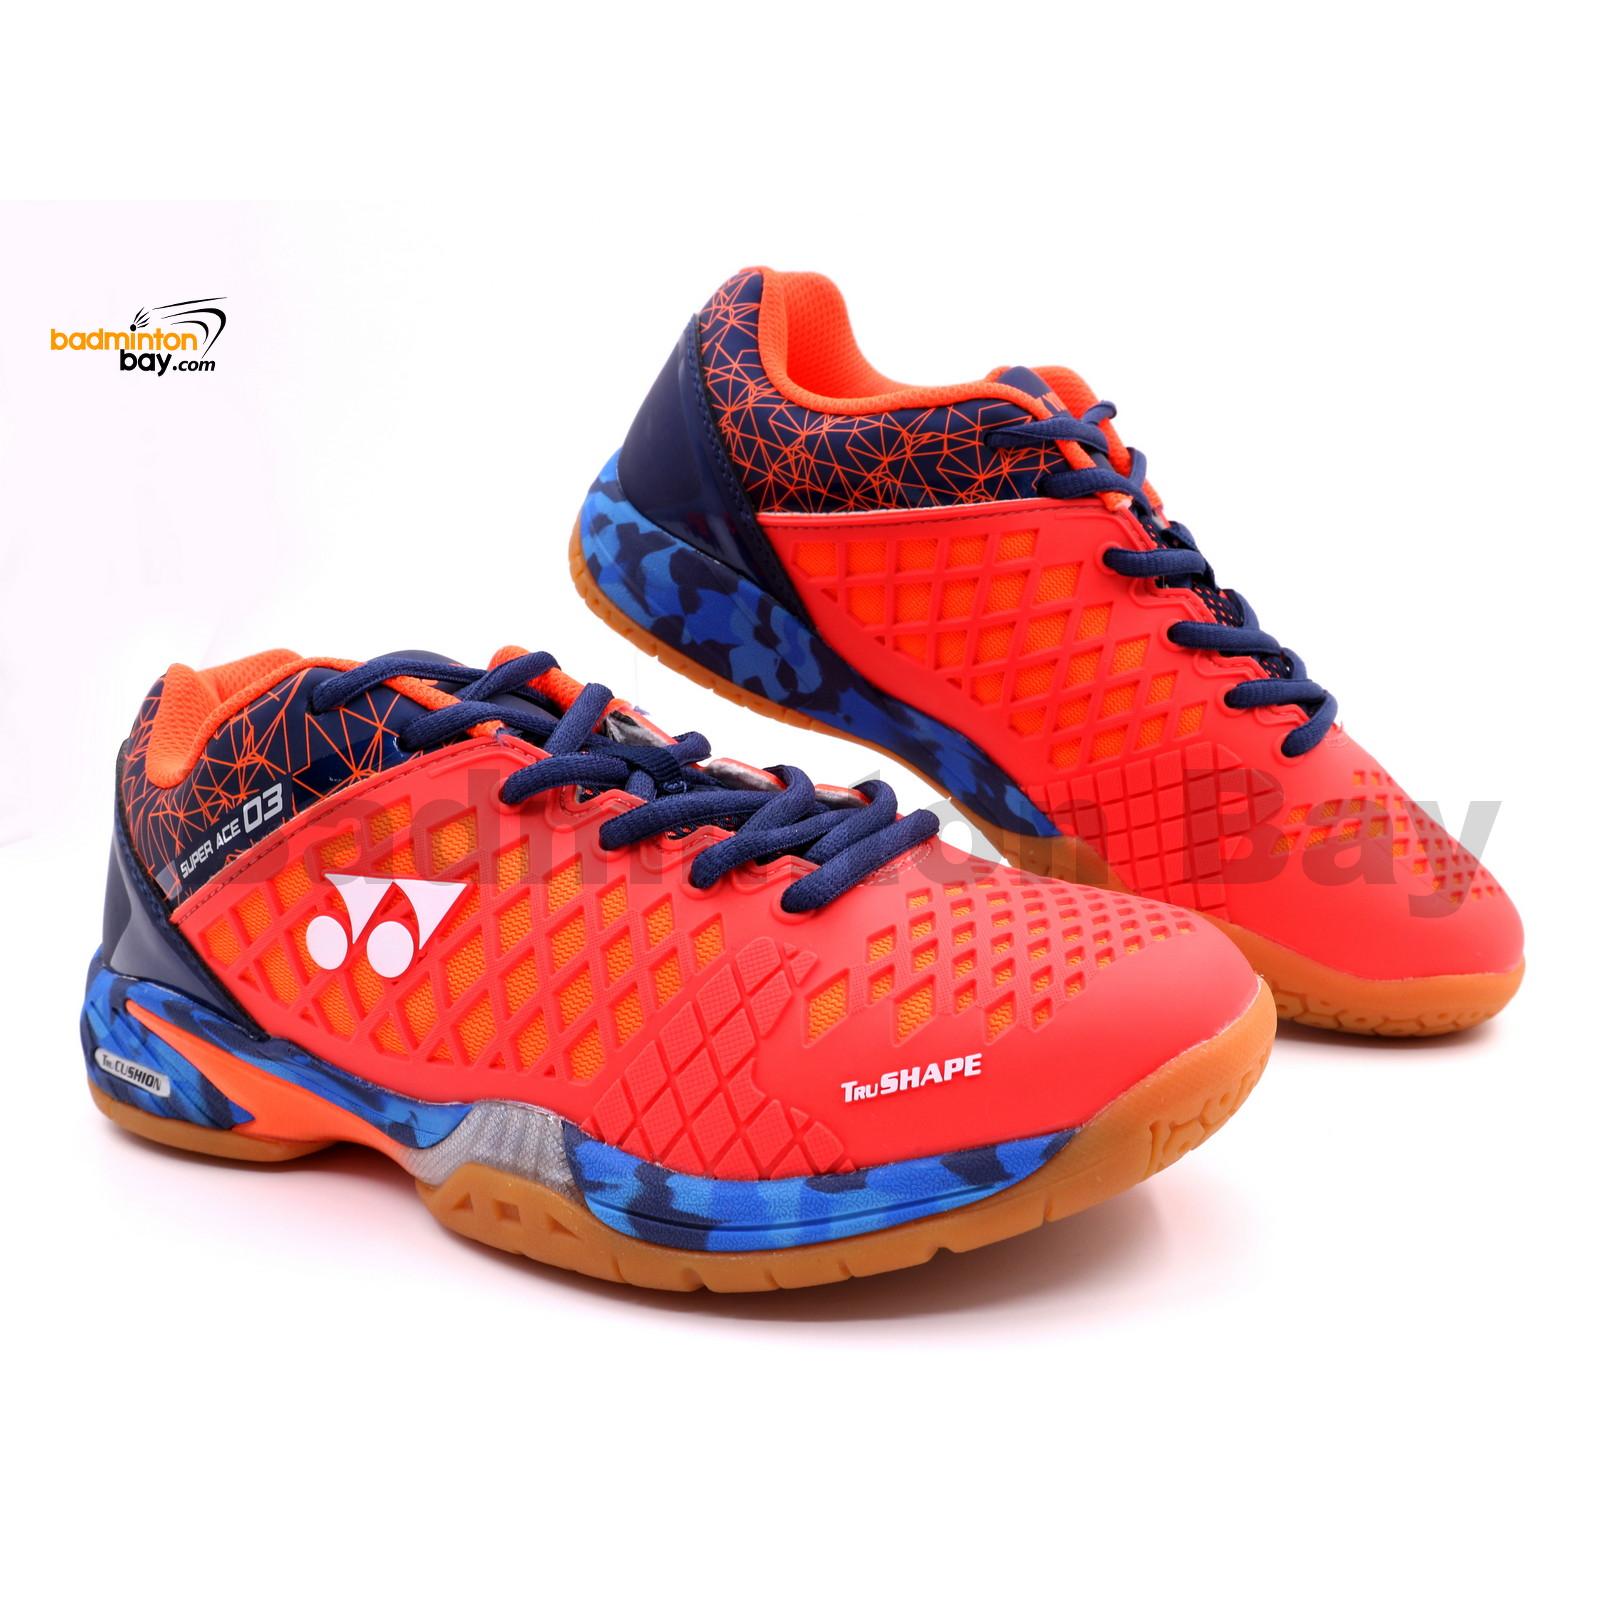 yonex badminton shoes latest